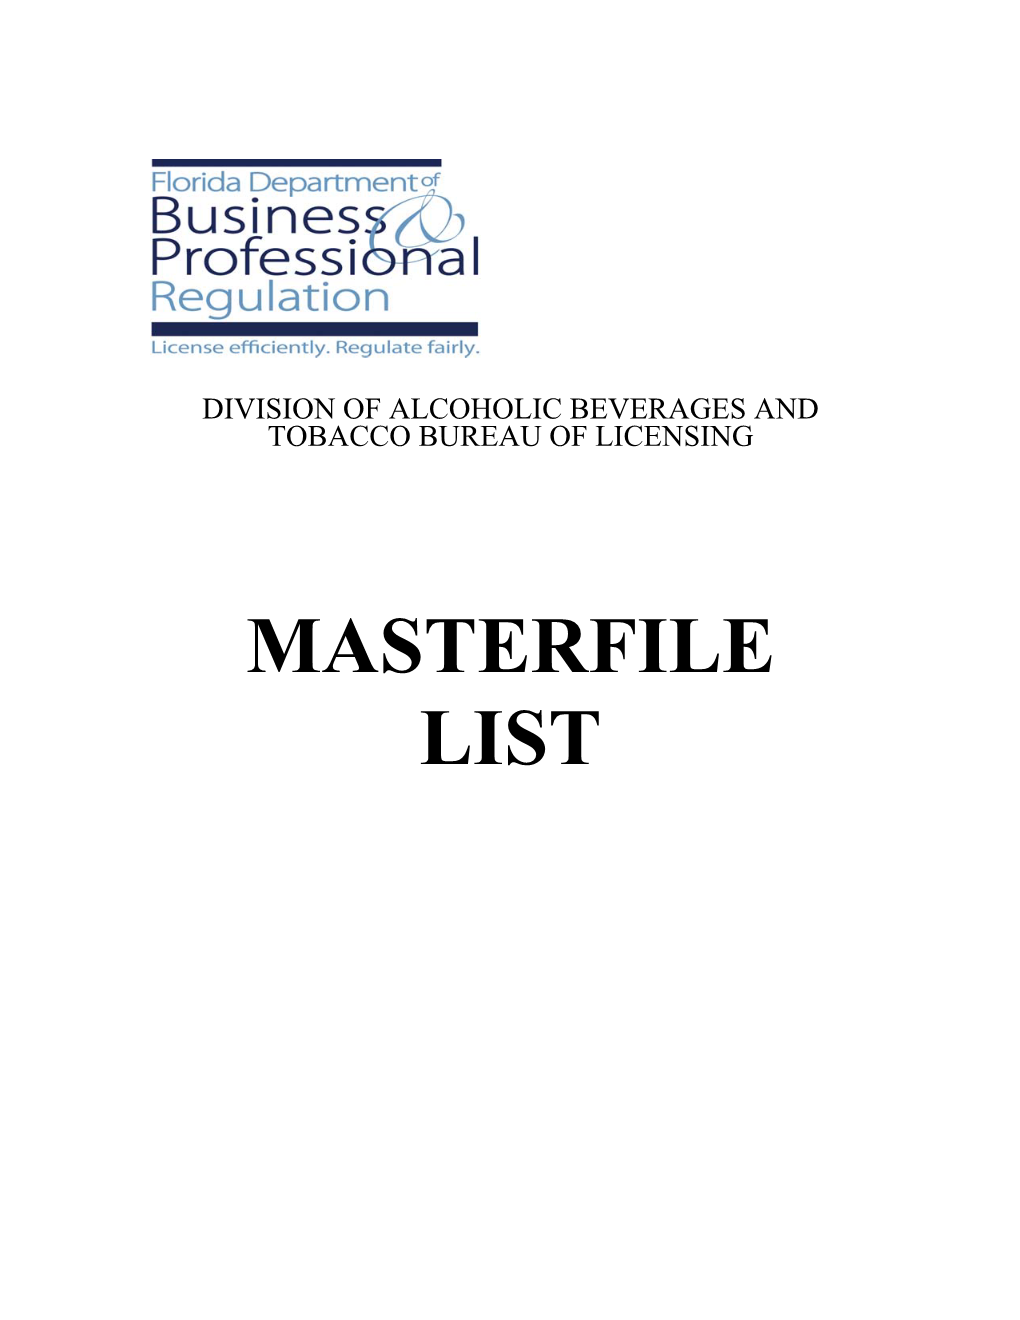 Masterfile List